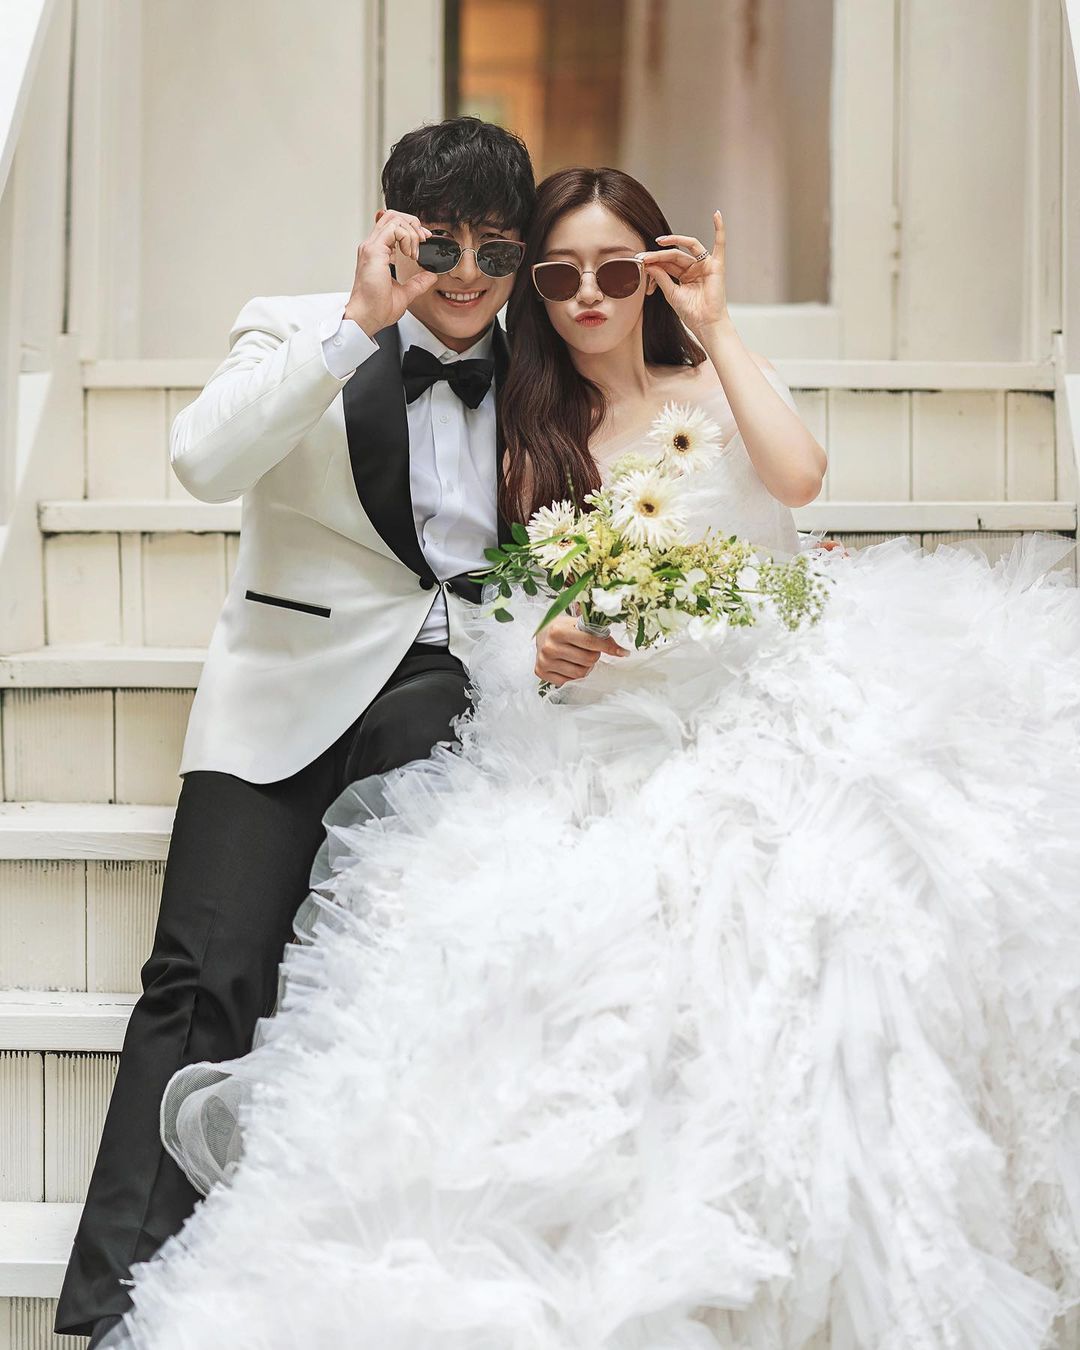 Nữ thần tượng Jiyeon (T-ara) hé lộ ảnh cưới đẹp như cổ tích